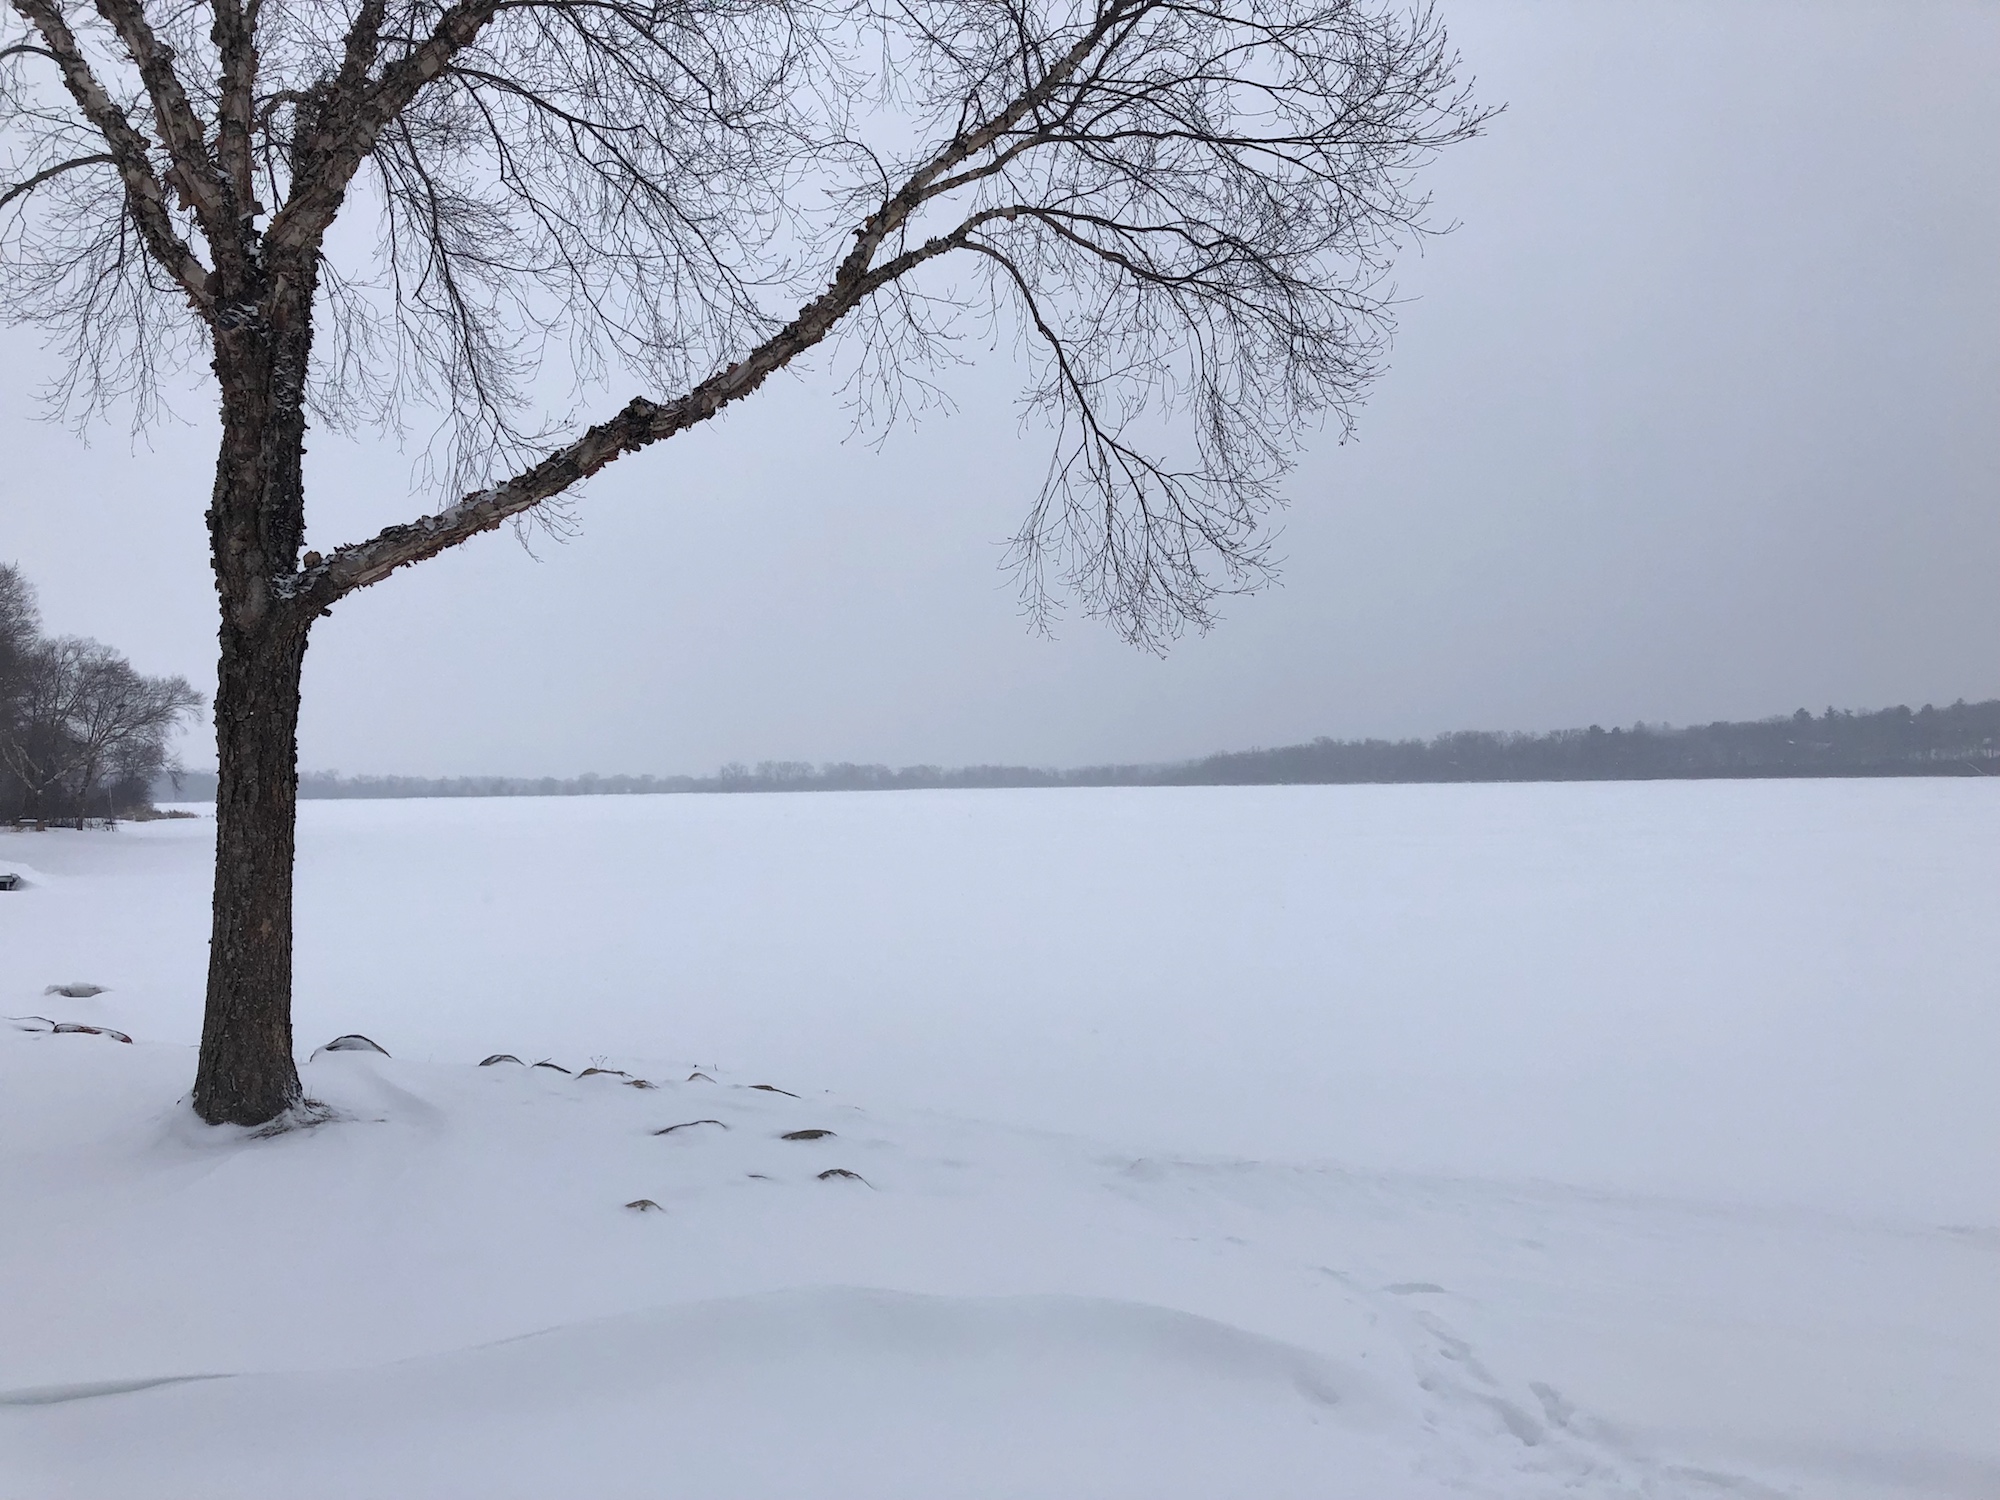 Lake Wingra on February 20, 2019.